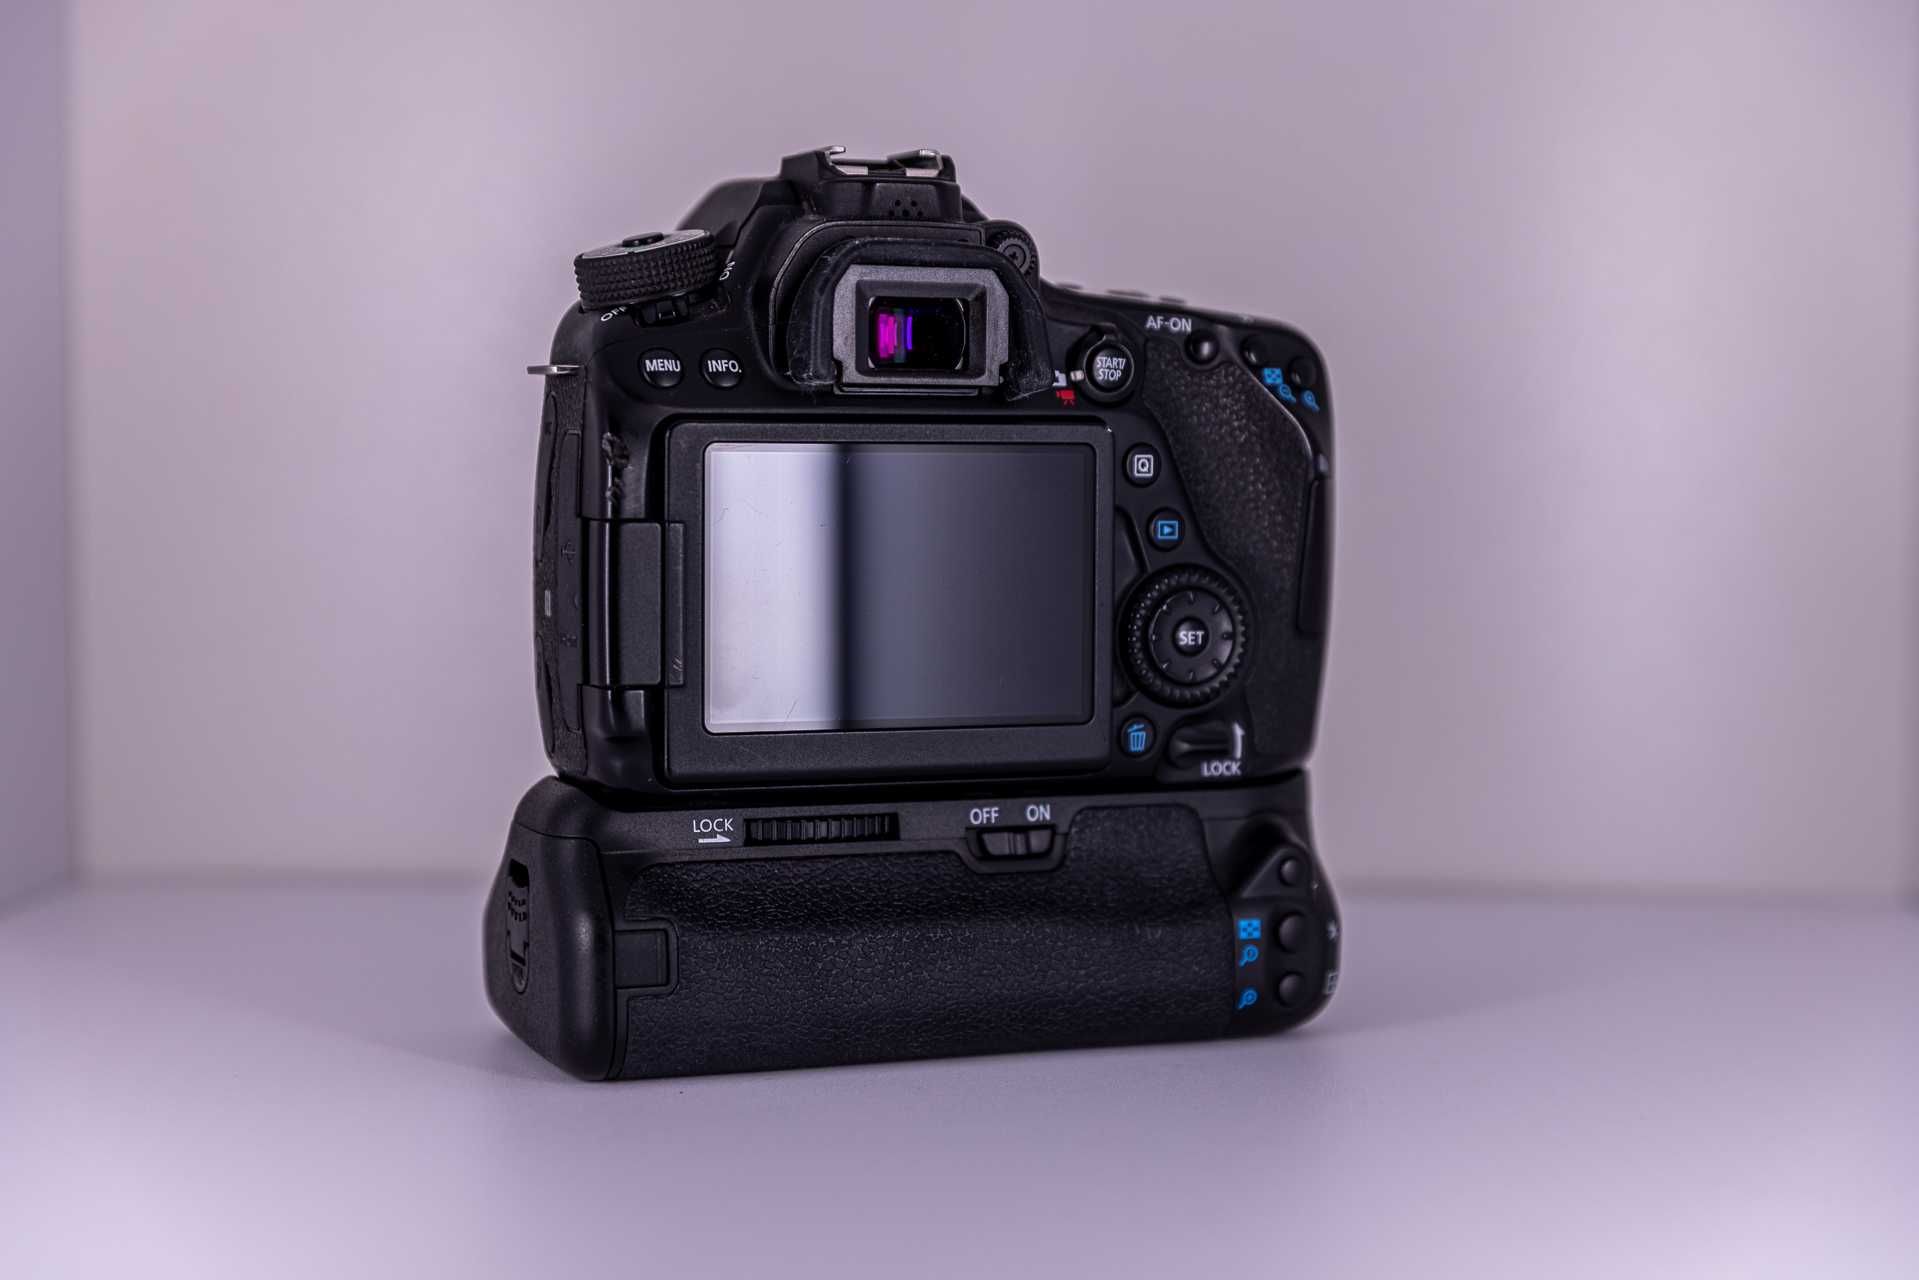 Aparat Canon EOS 80D (w pełni sprawny) + Grip / Lustrzanka, DSLR